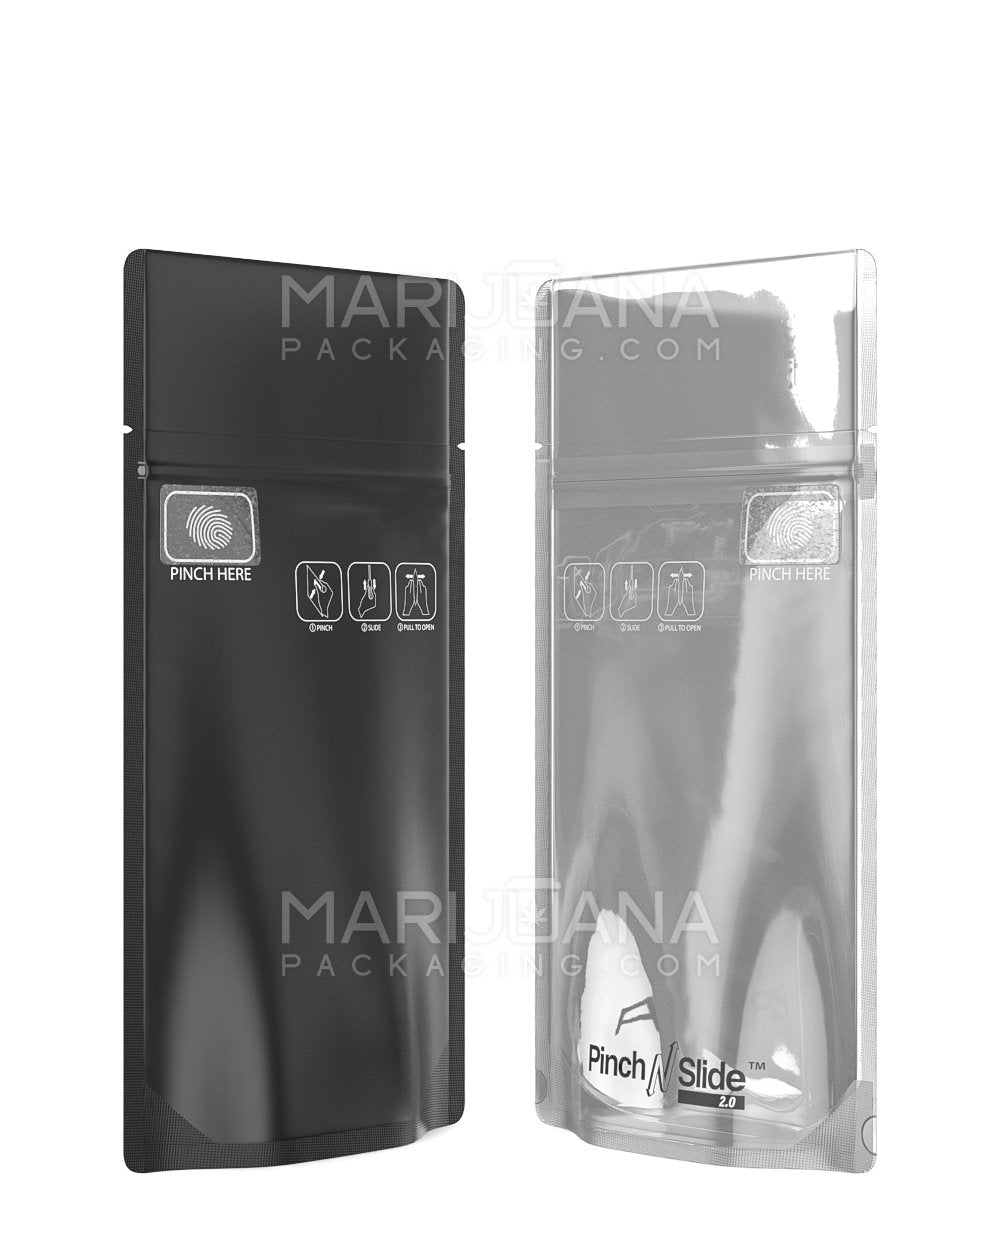 Child Resistant & Tamper Evident Pinch N Slide 3.0 Matte Black Vista Mylar Bags | 3.6in x 5.7in - 3.5g | Sample - 2